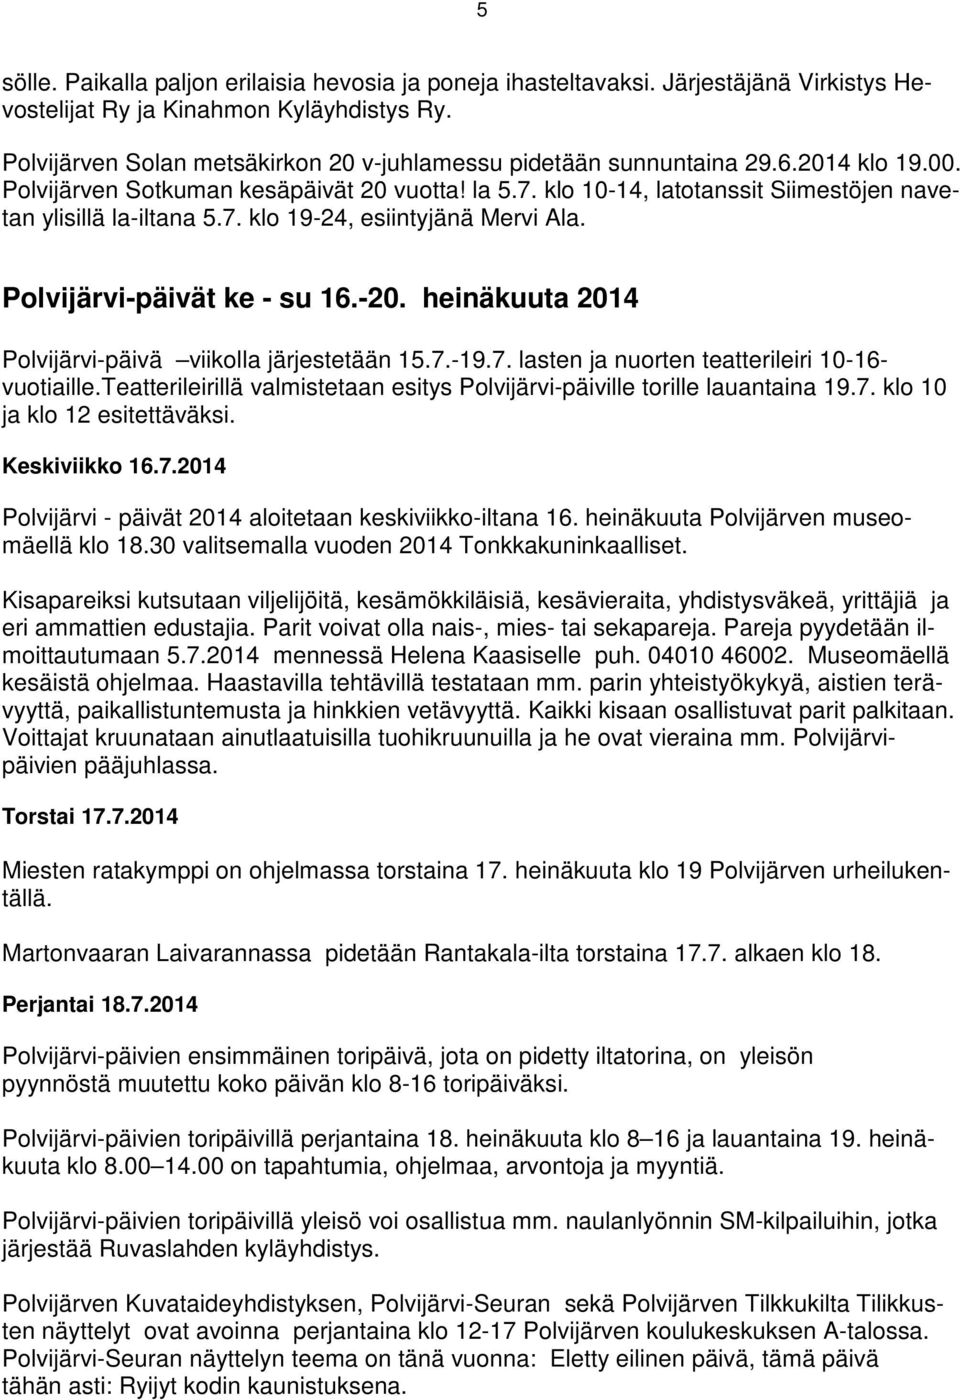 klo 10-14, latotanssit Siimestöjen navetan ylisillä la-iltana 5.7. klo 19-24, esiintyjänä Mervi Ala. Polvijärvi-päivät ke - su 16.-20. heinäkuuta 2014 Polvijärvi-päivä viikolla järjestetään 15.7.-19.